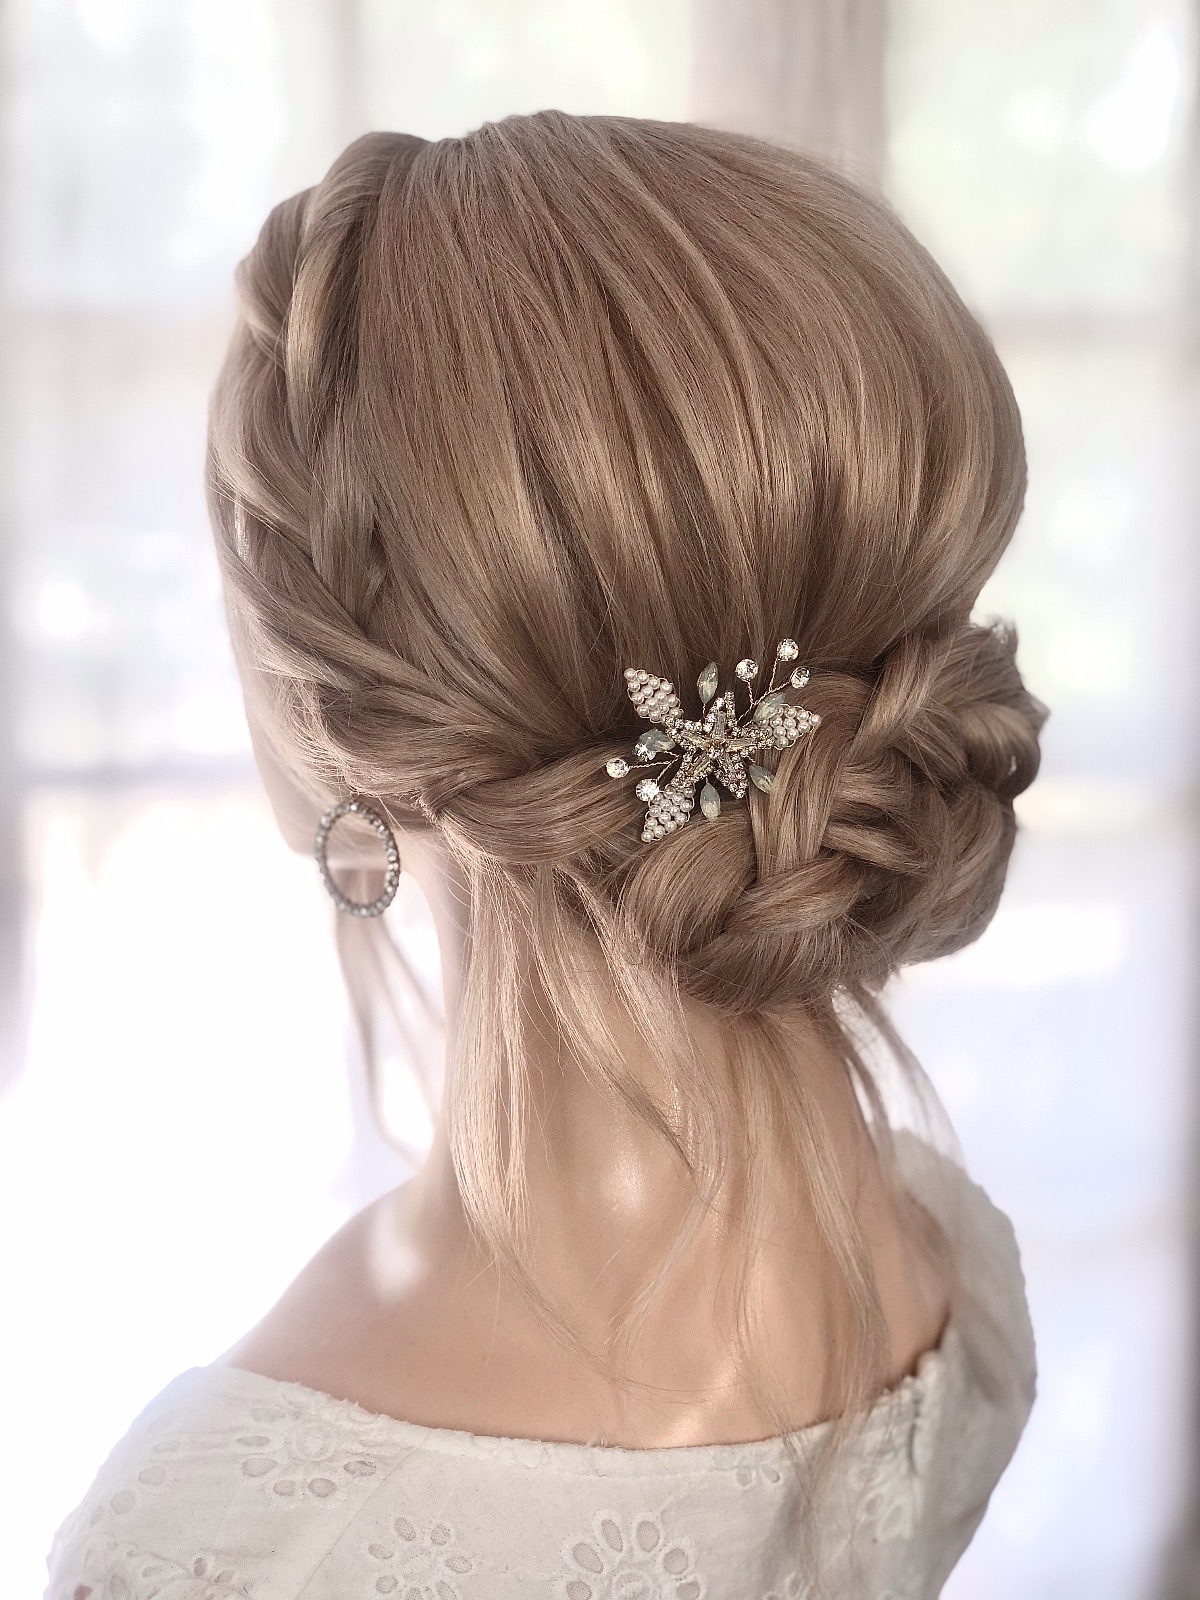 Bridal Hair & makeup by Emma-Image-85